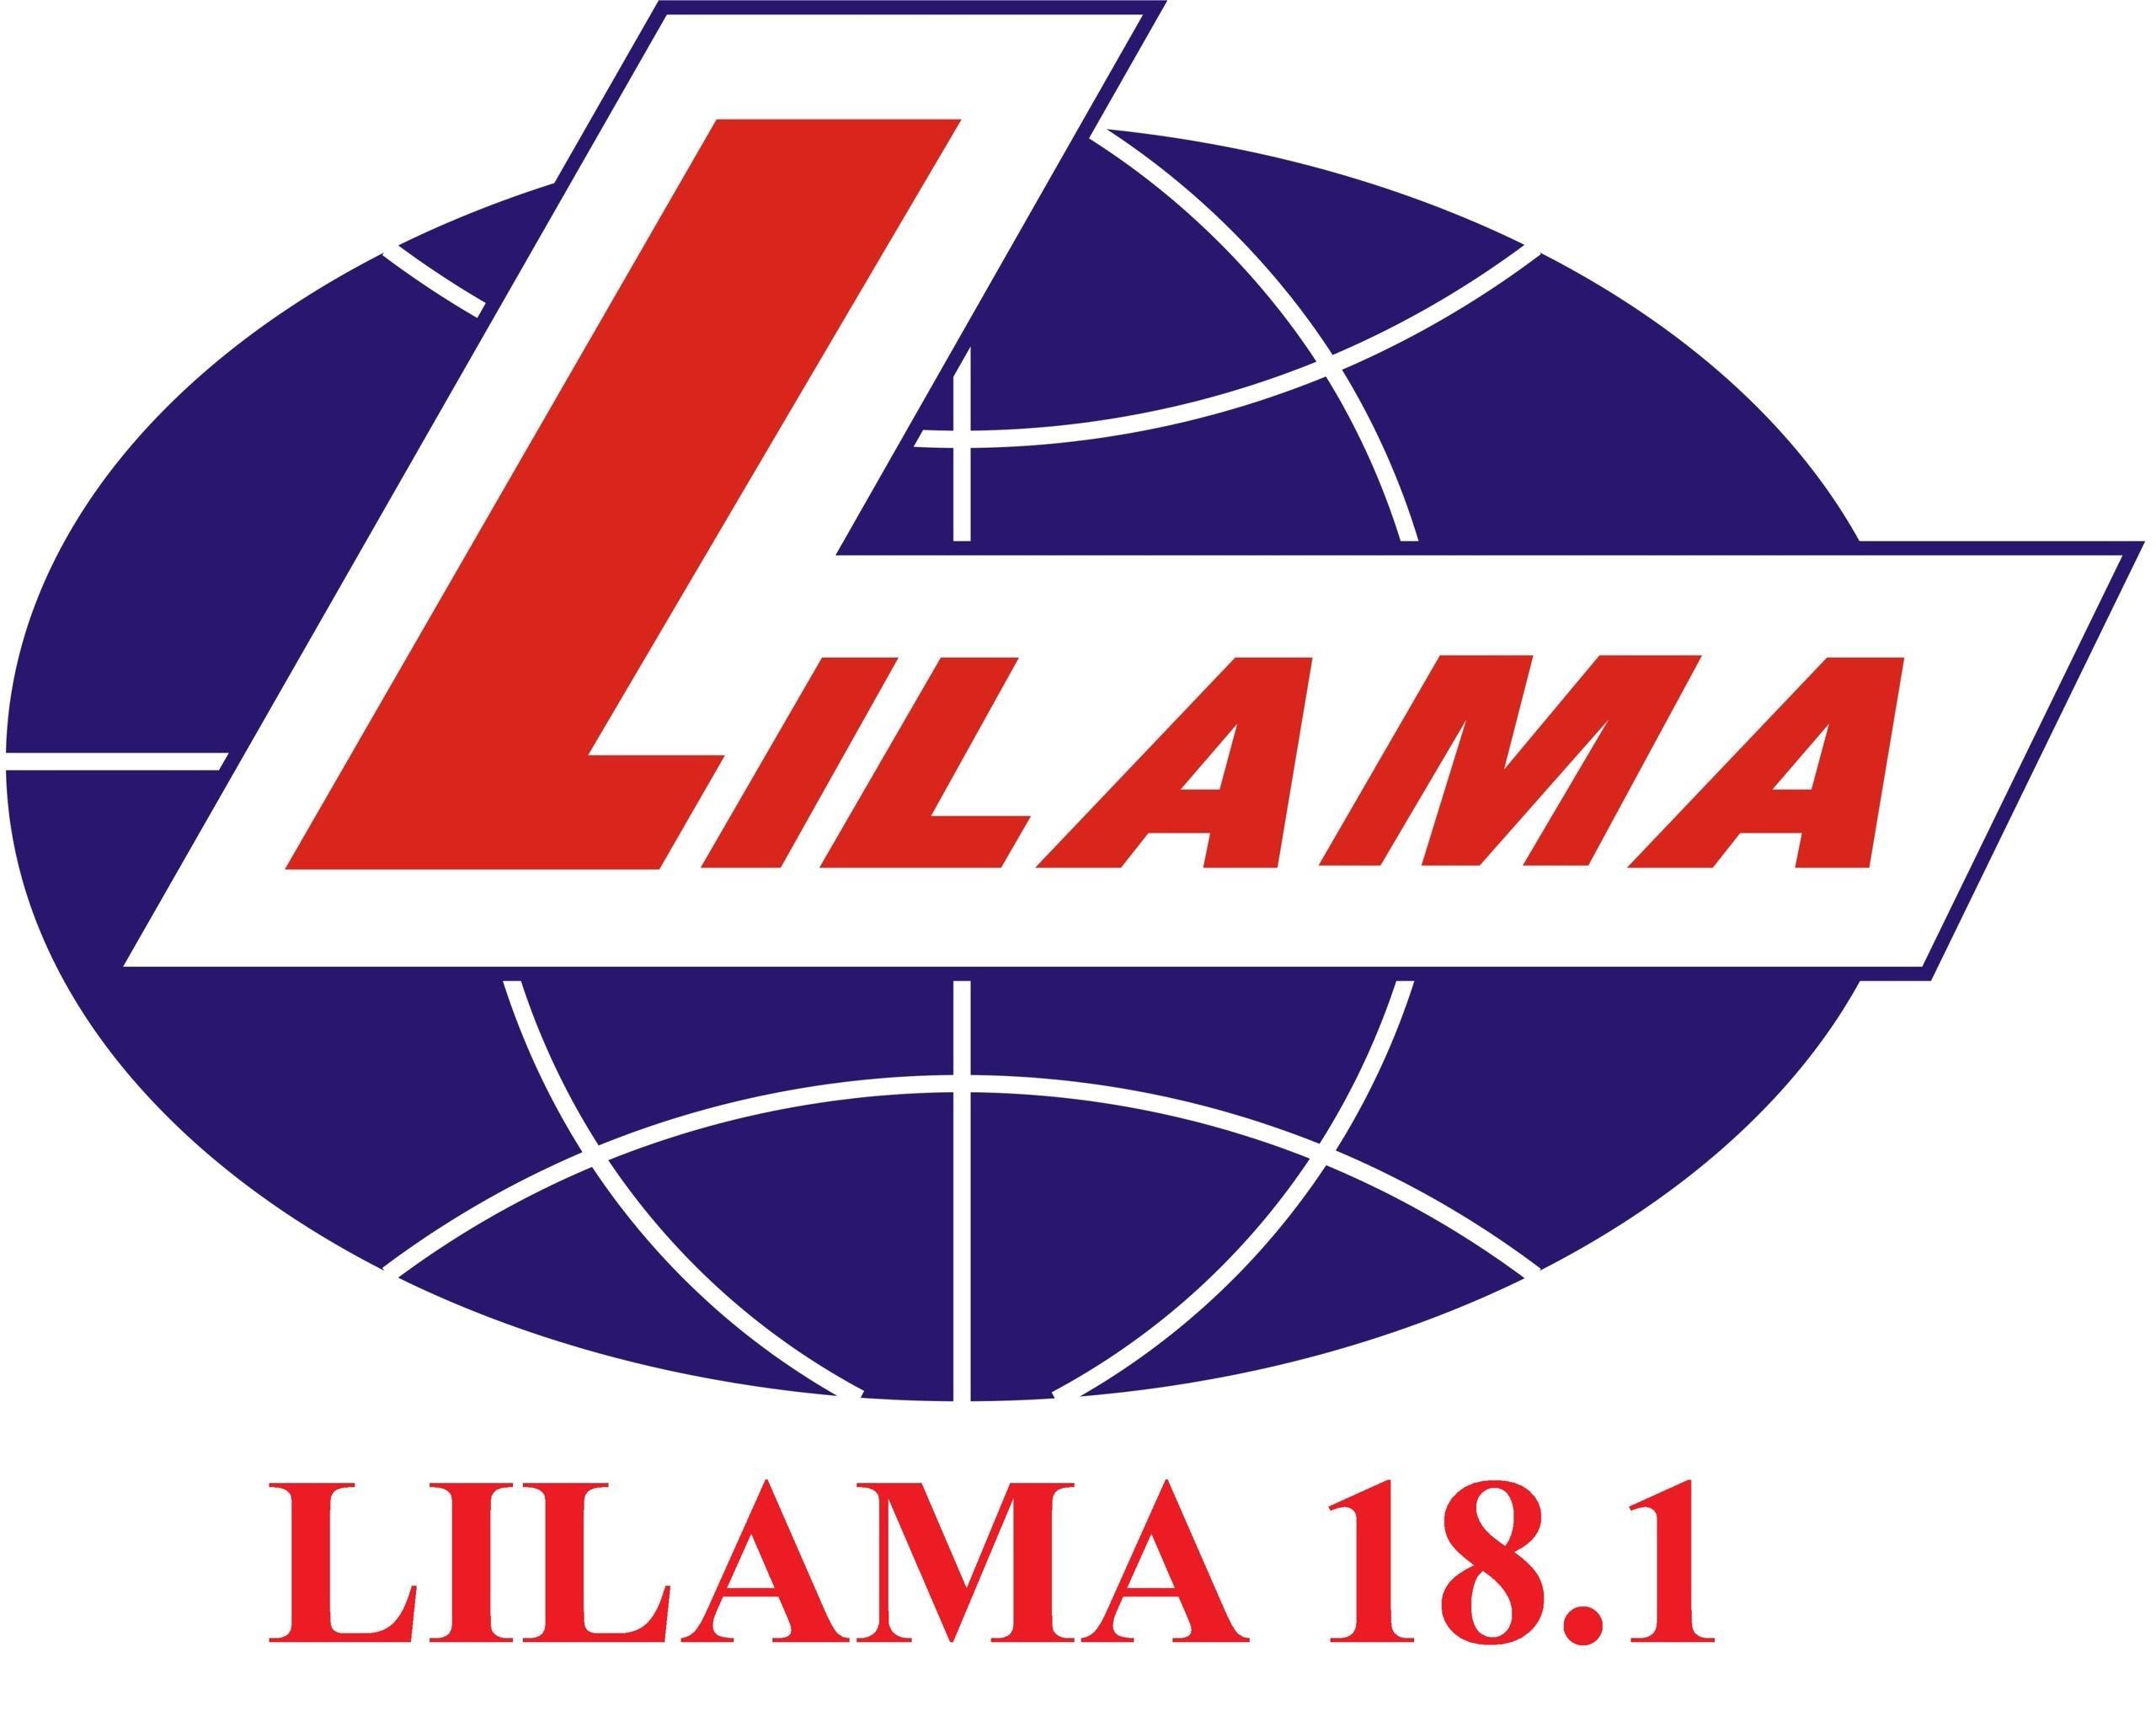 Công ty Cổ phần Lilama 18.1